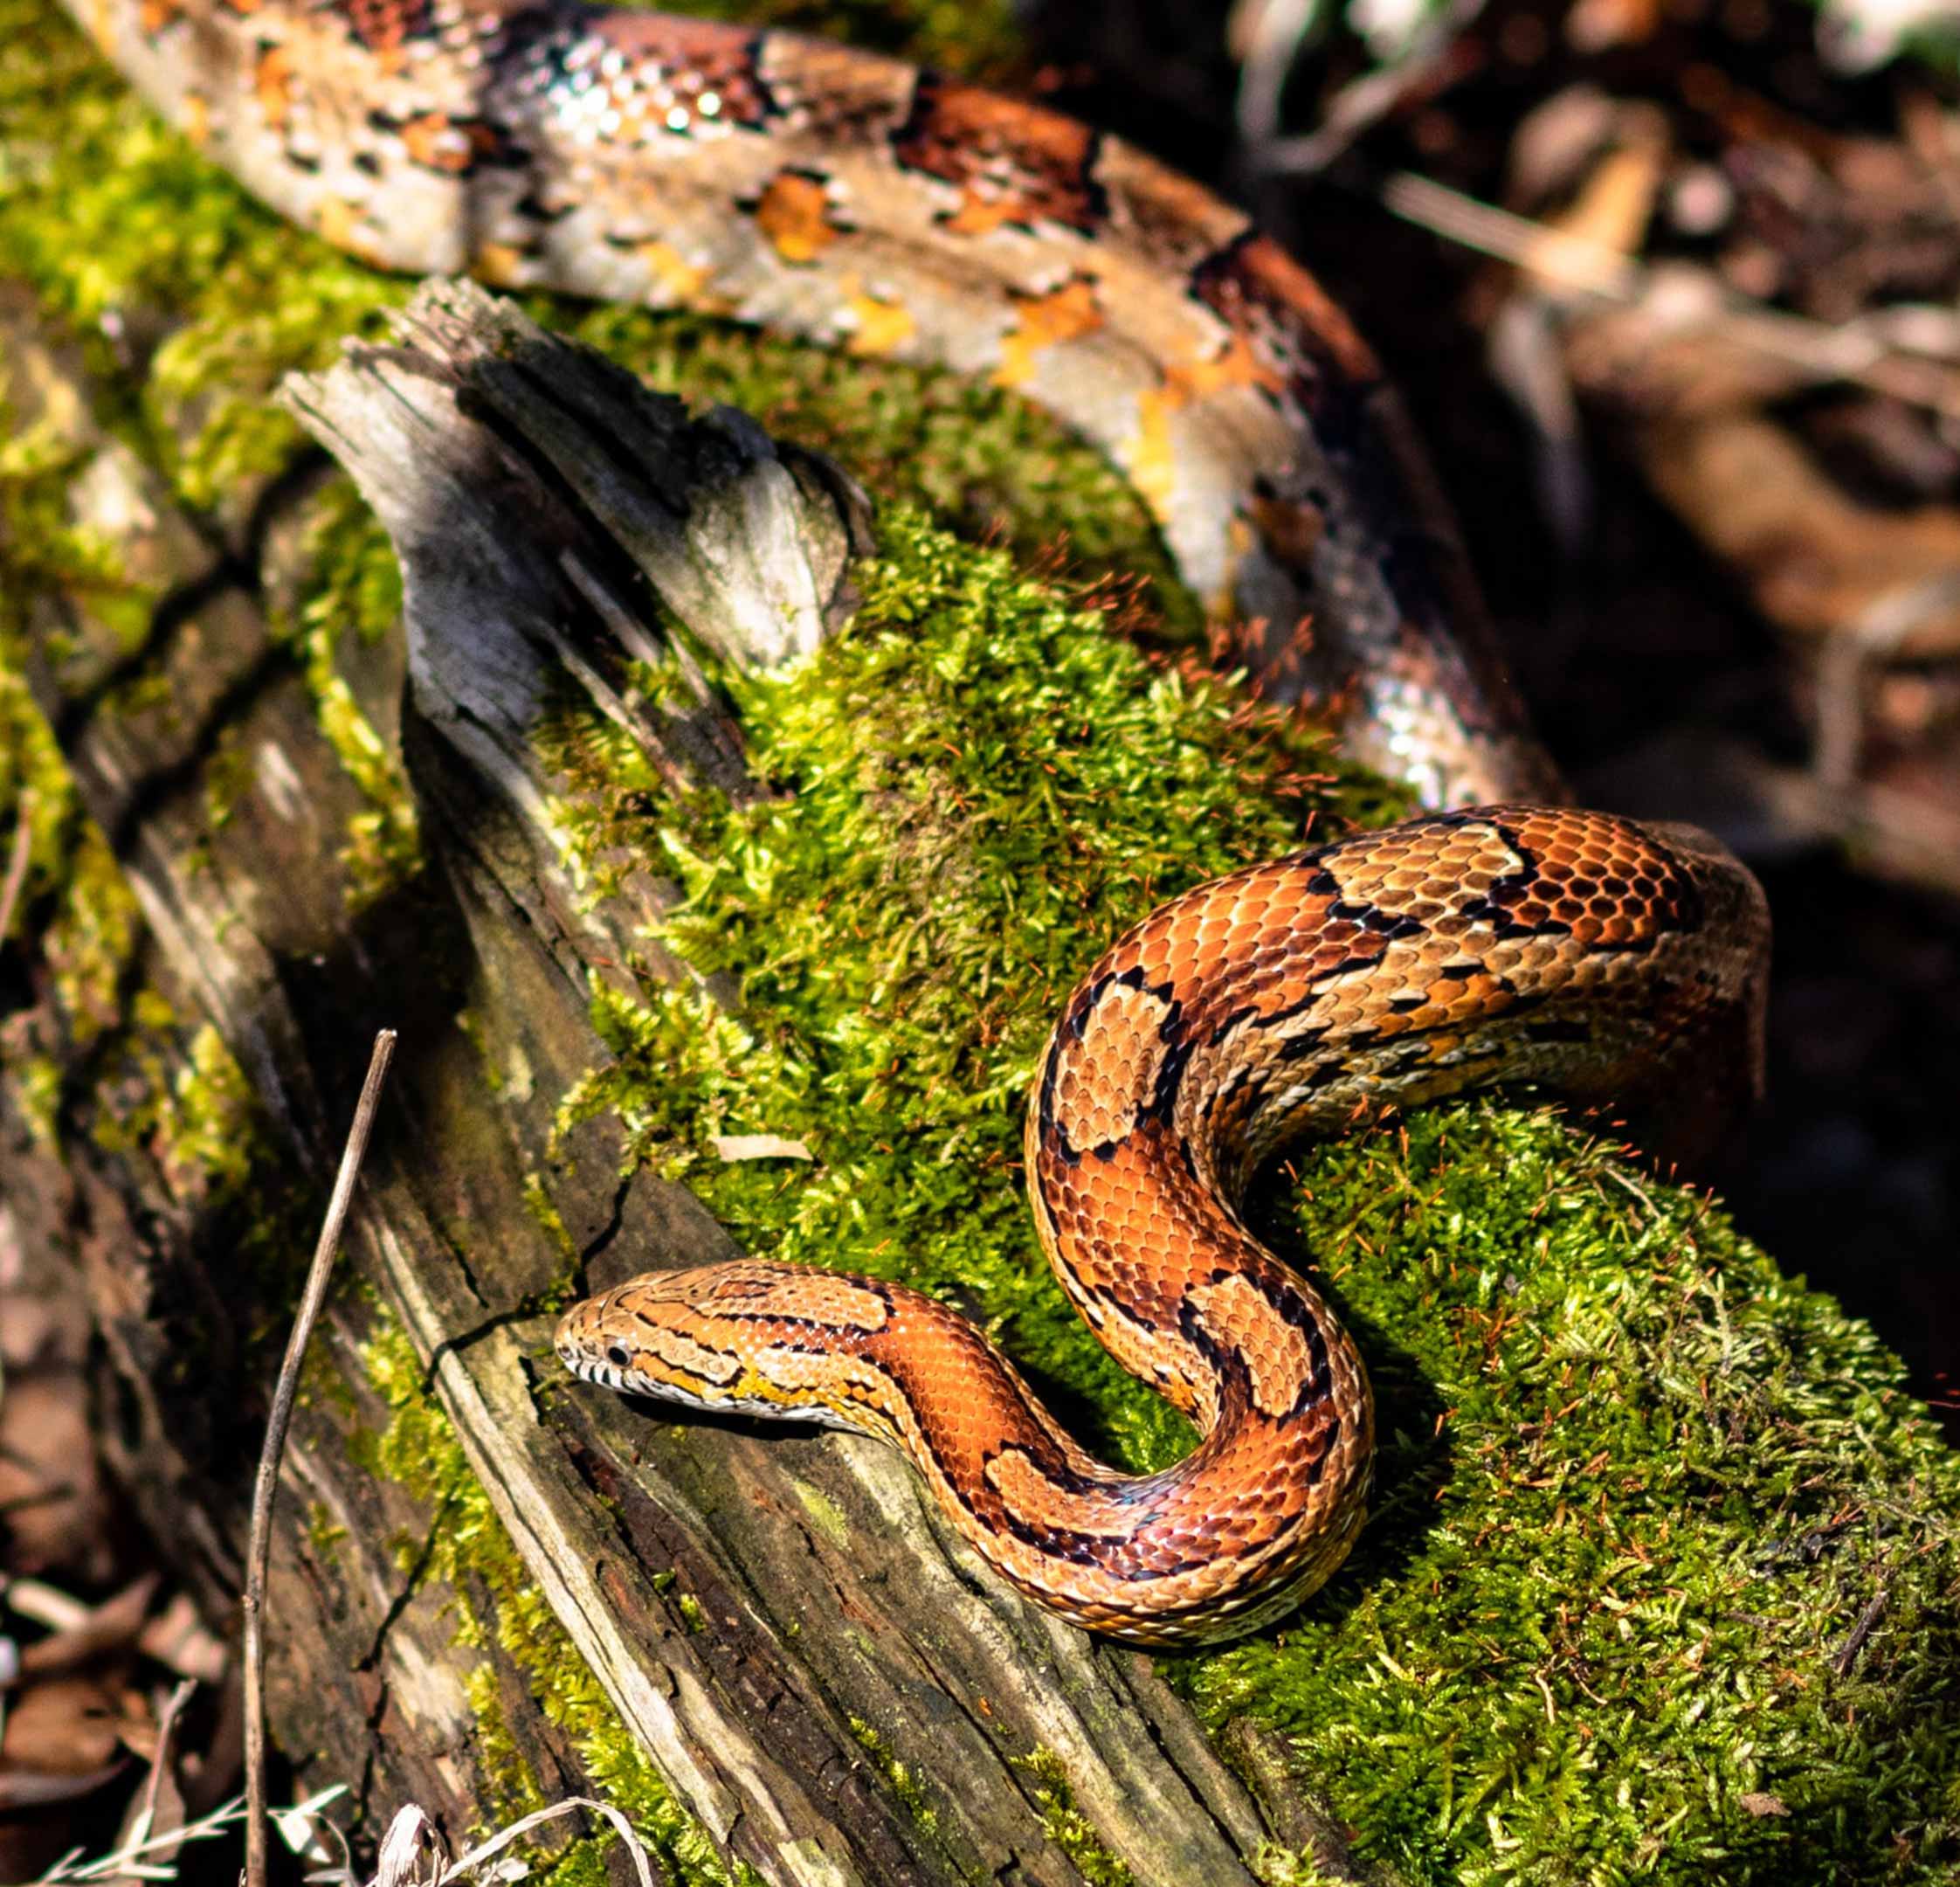 snake sunbathing on a fallen tree branch